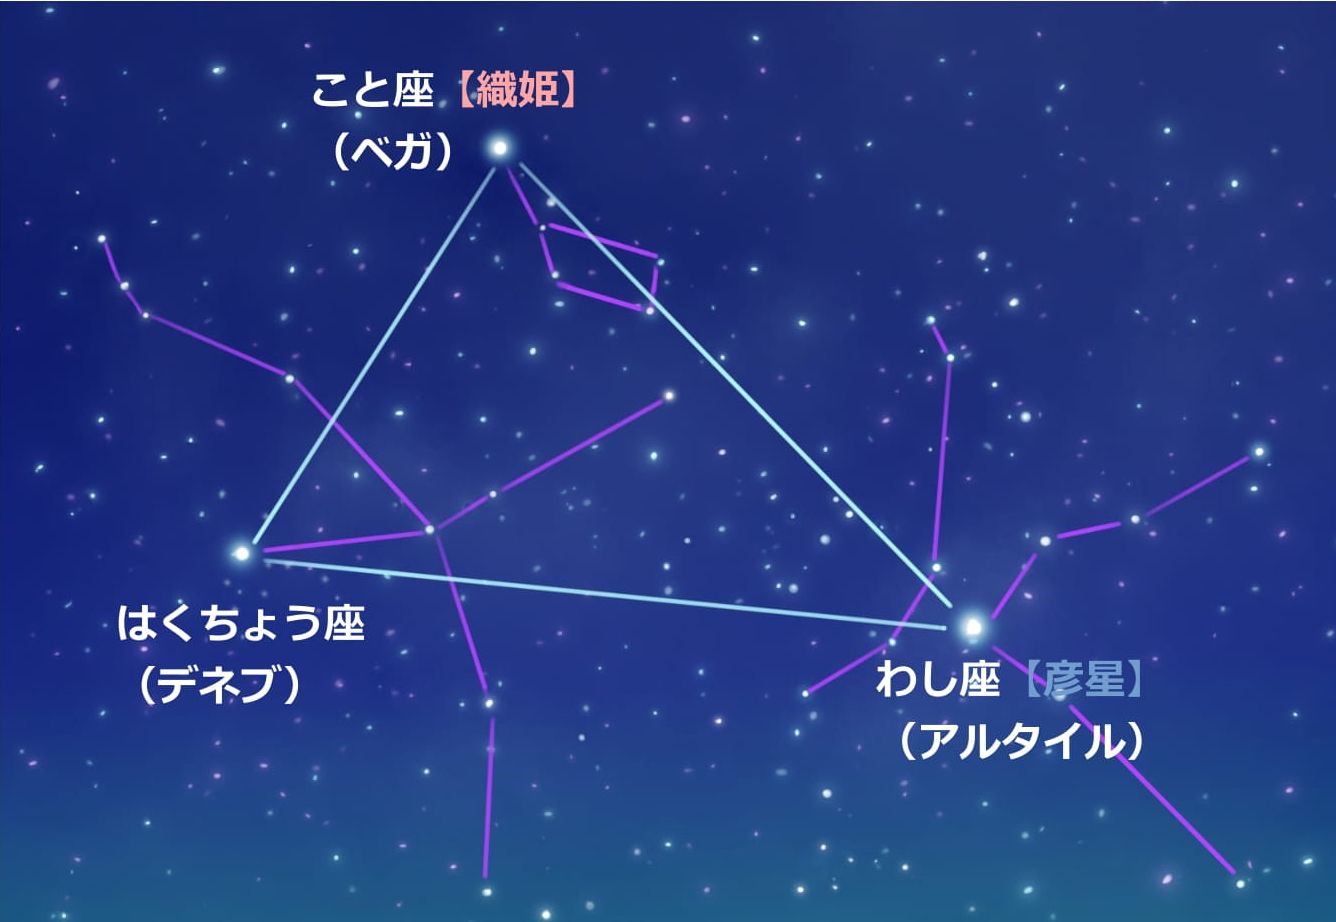 夏の大三角の星座図